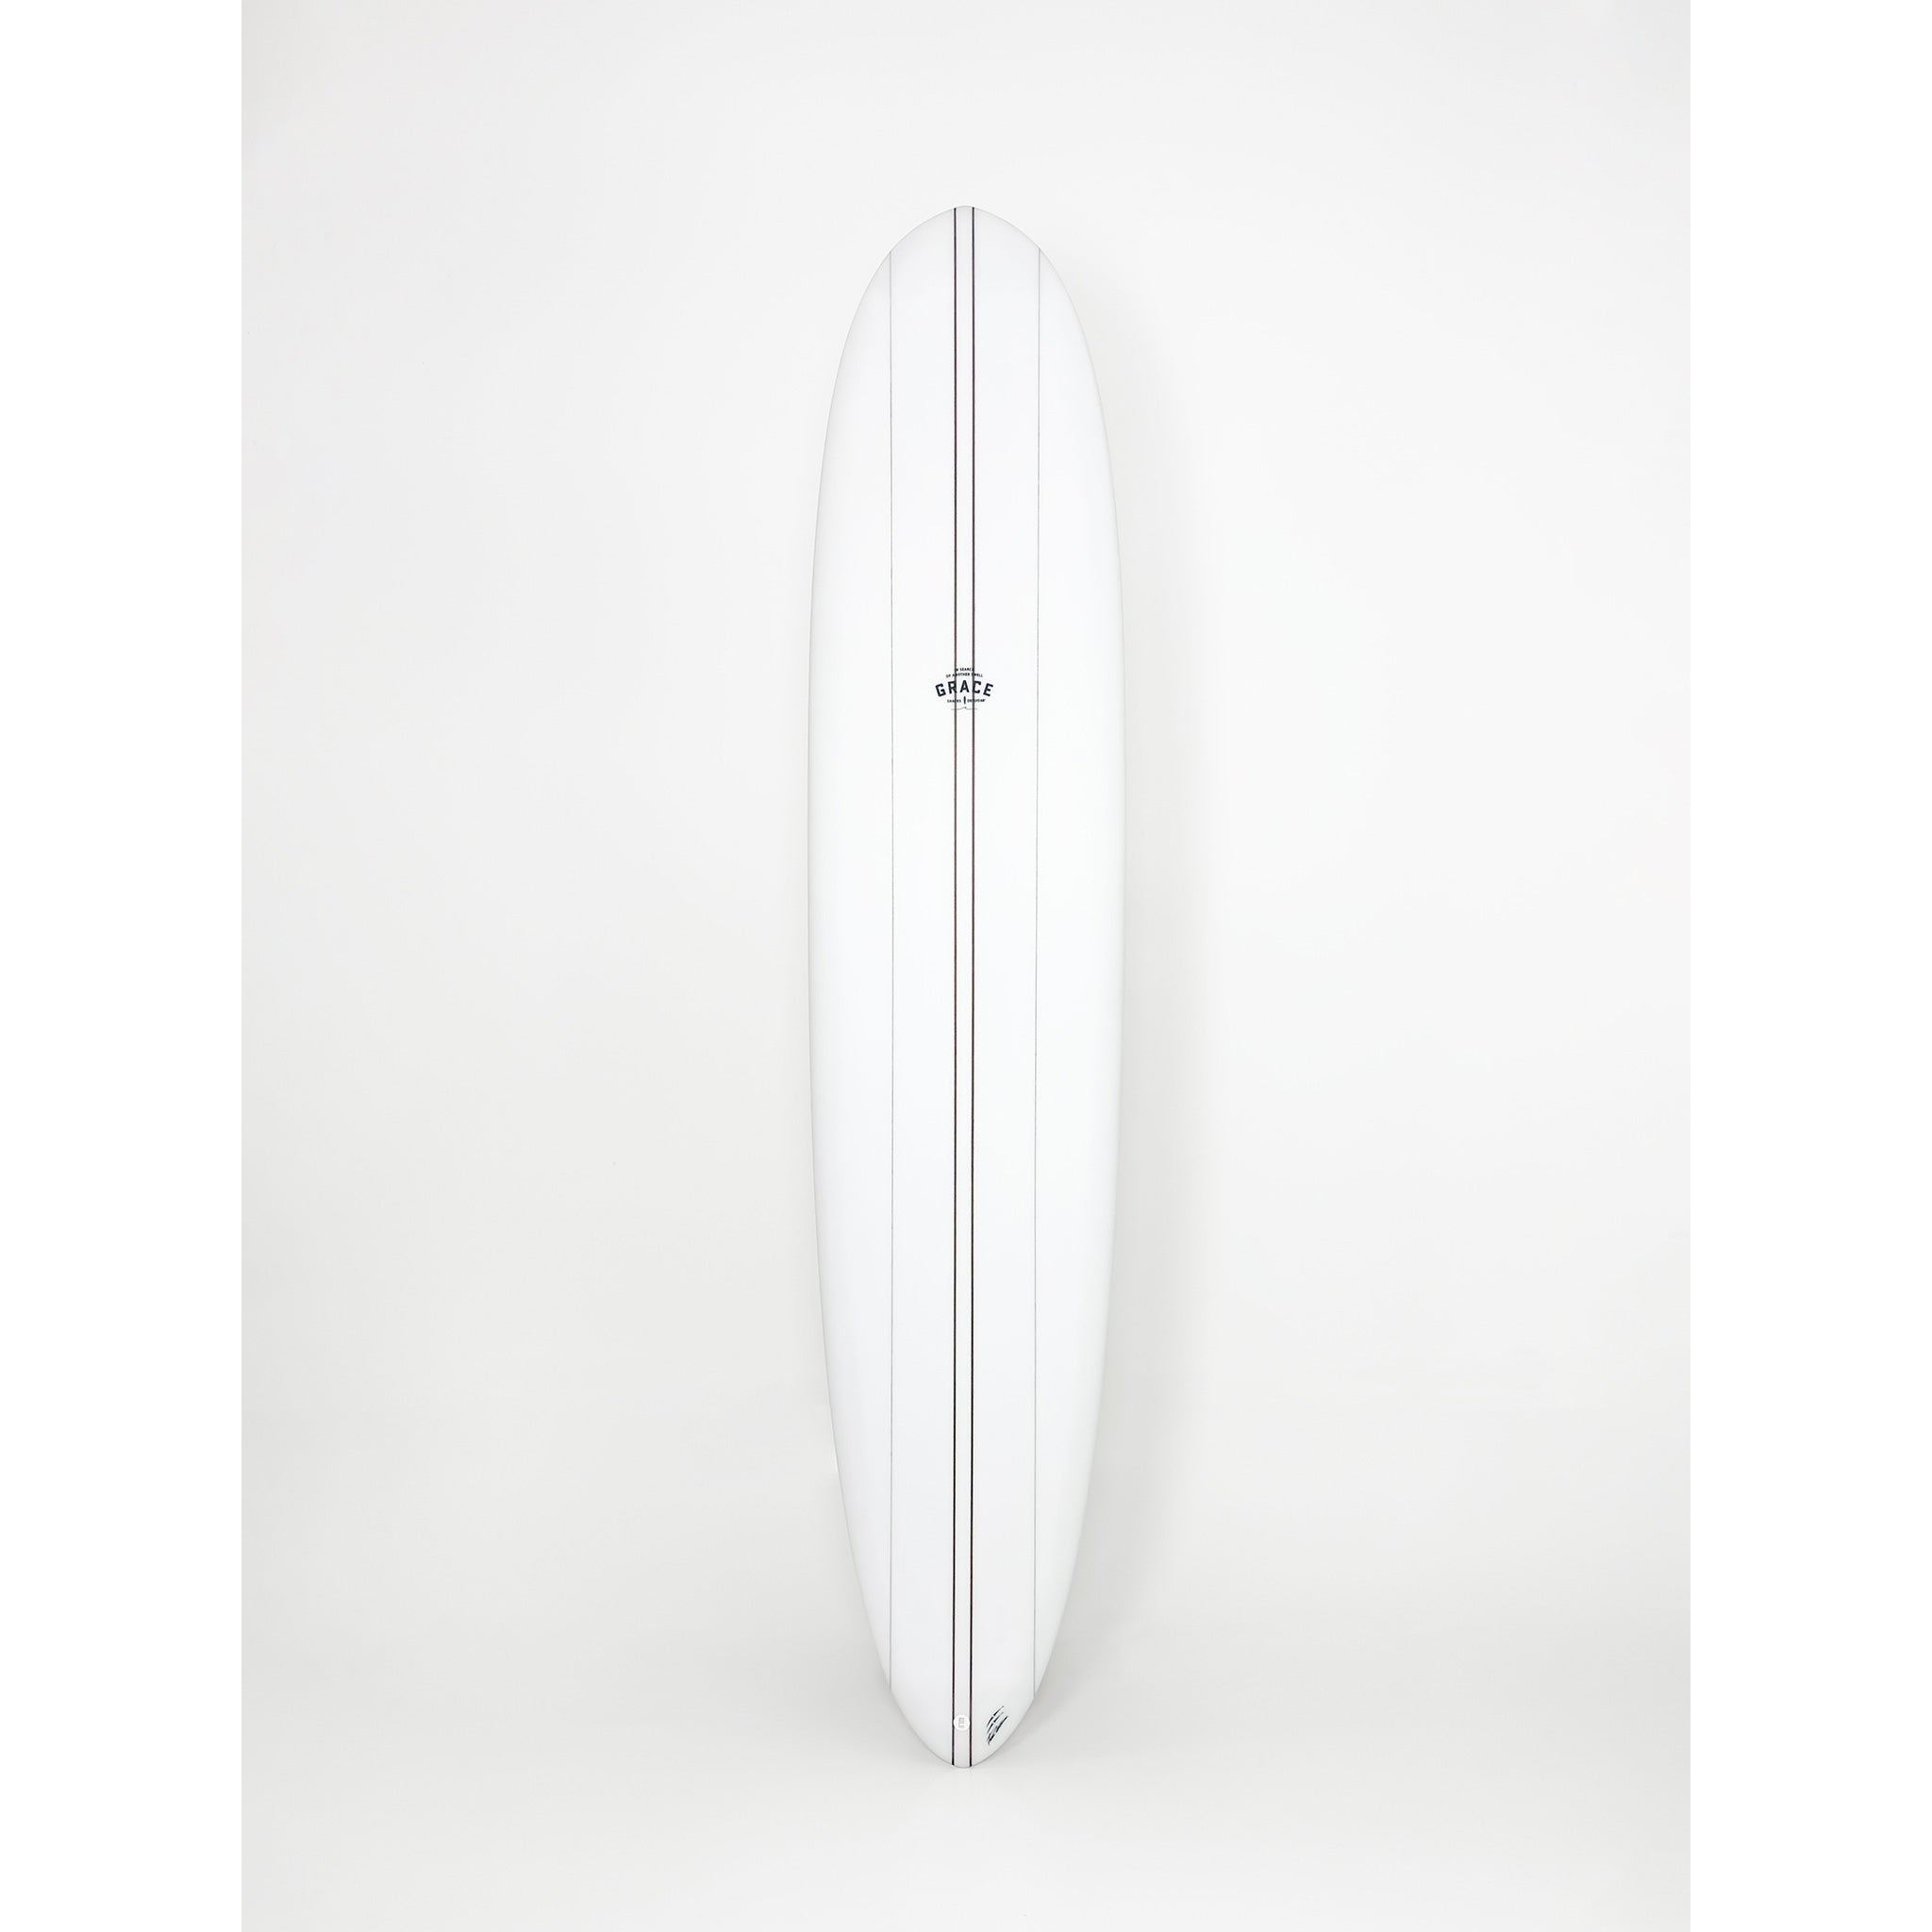 Phil Grace Surfboard Allrounder 9'2 x 23 1/4 x 3 x 74.1L - LGB016